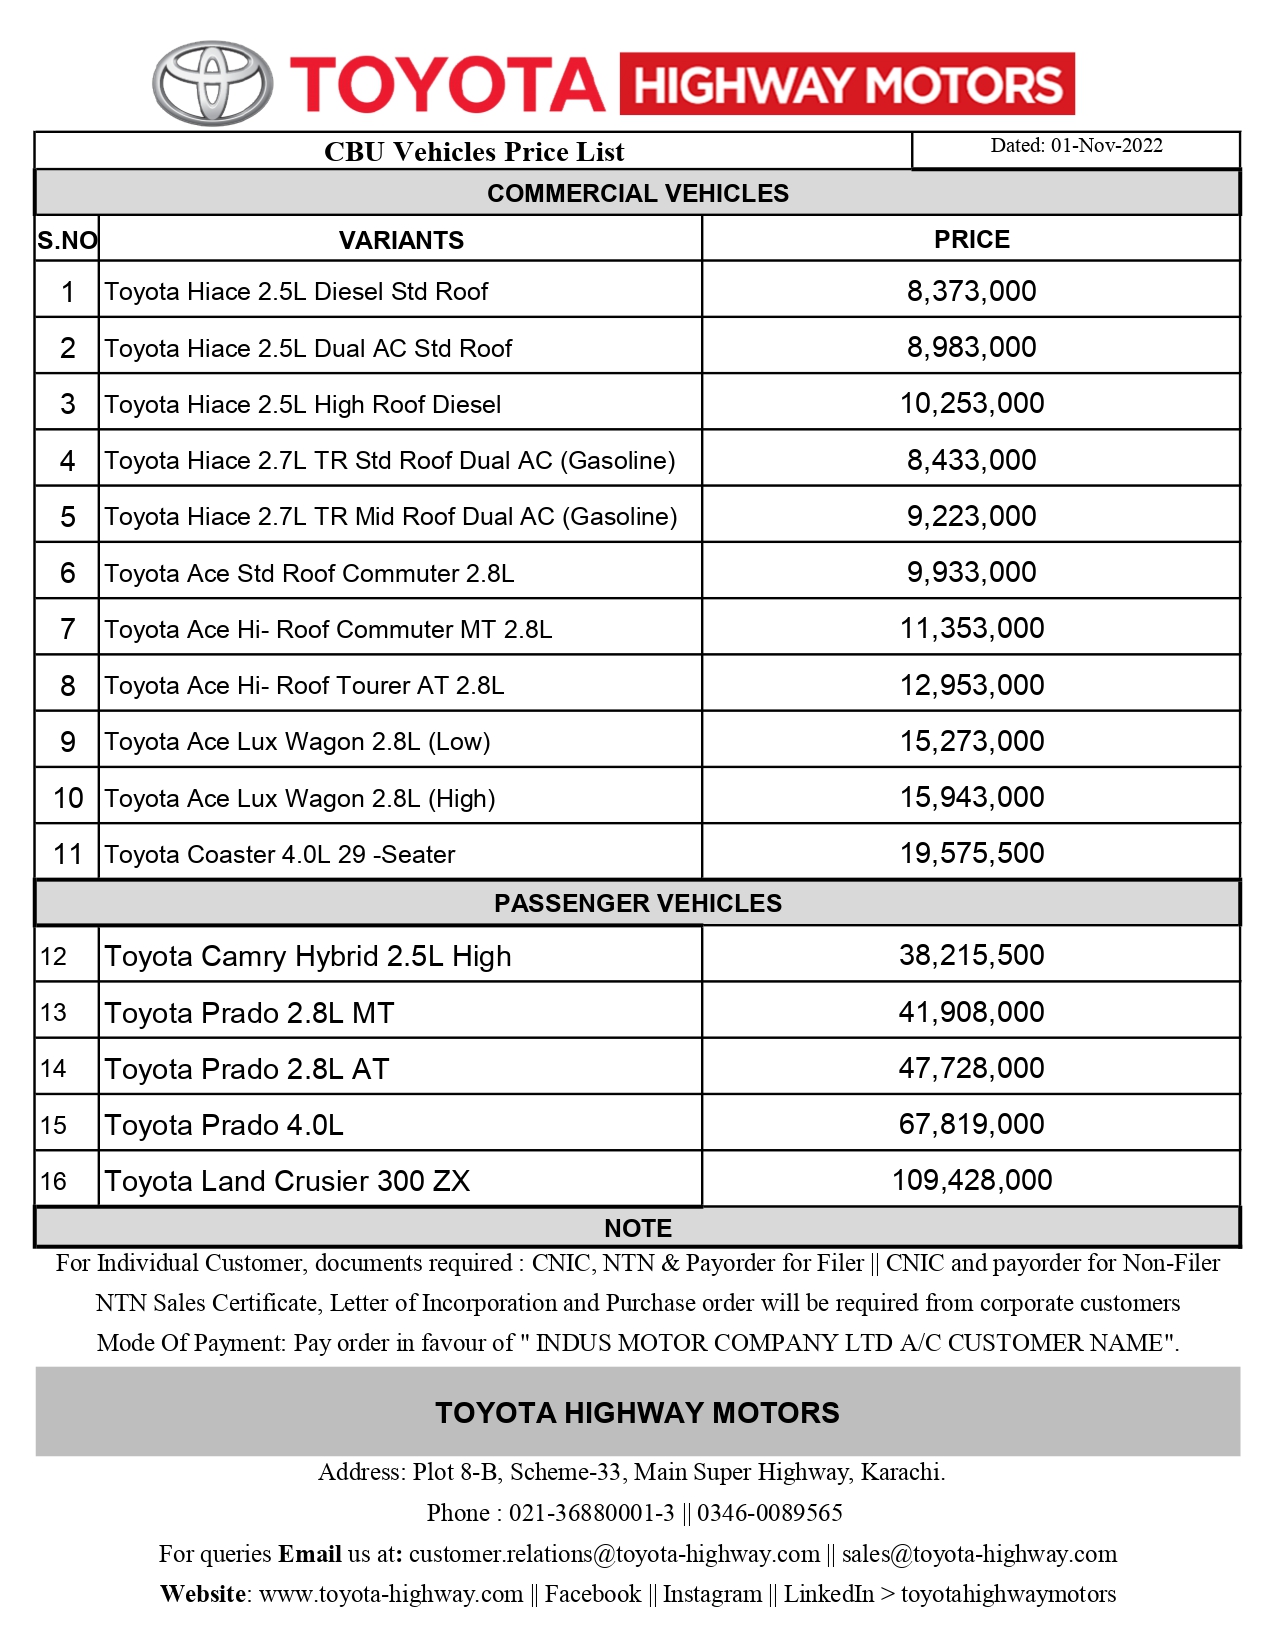 Toyota Vehciles Price List